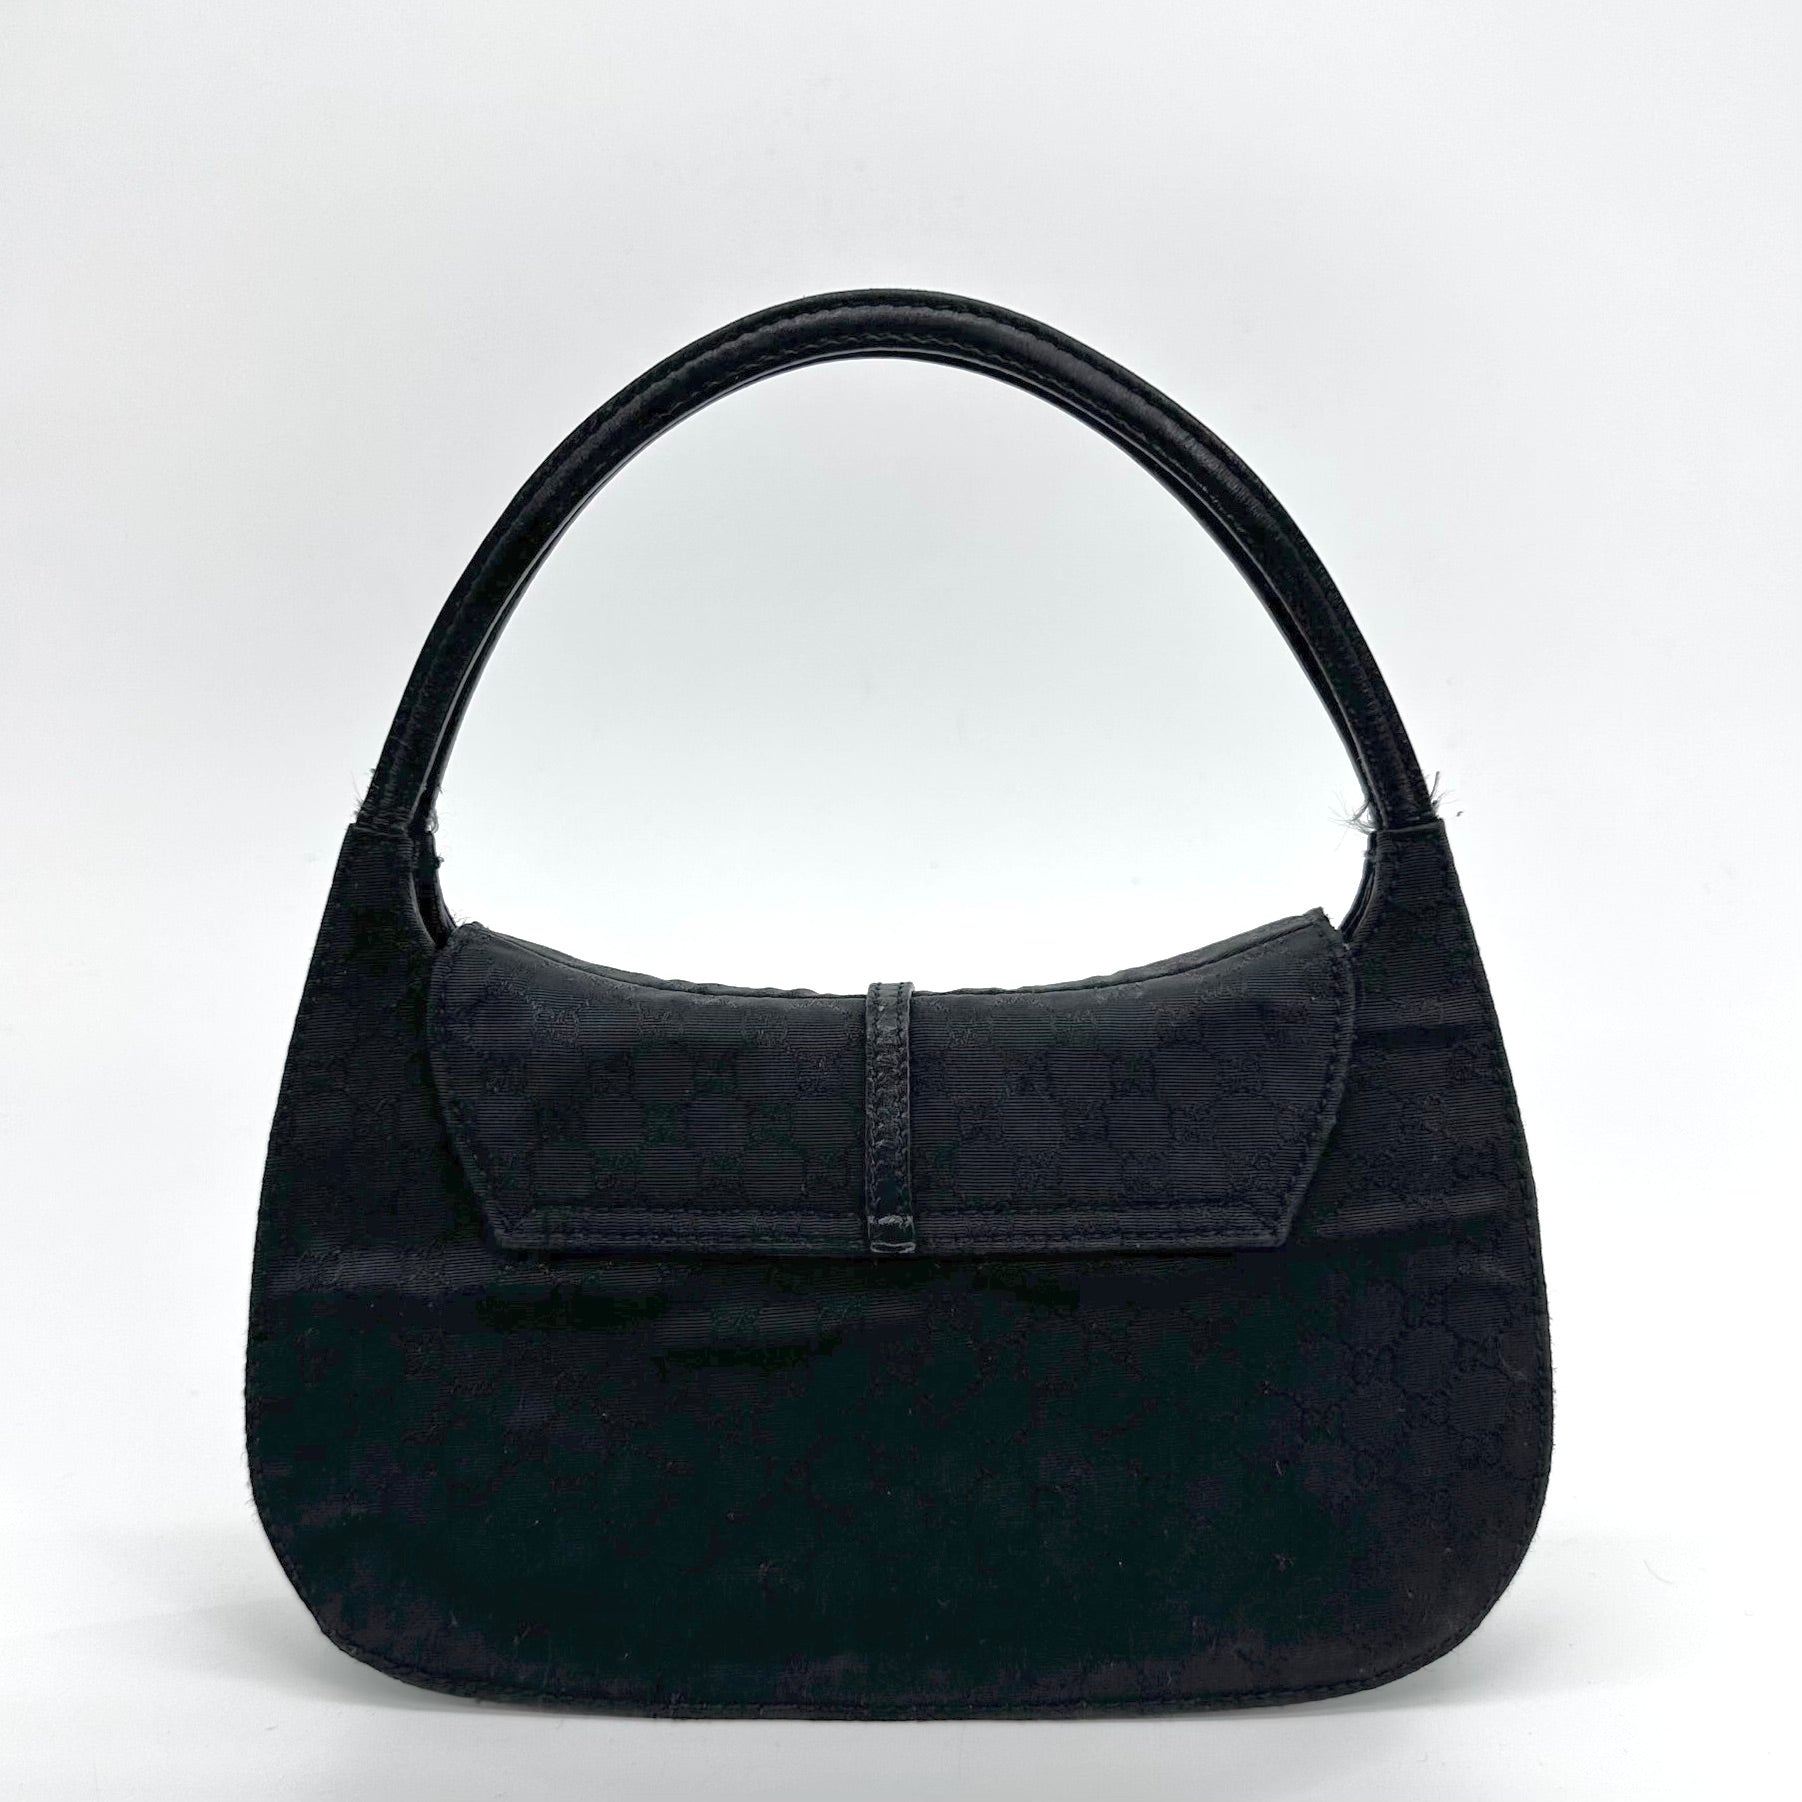 Monogram Micro Handbag Black